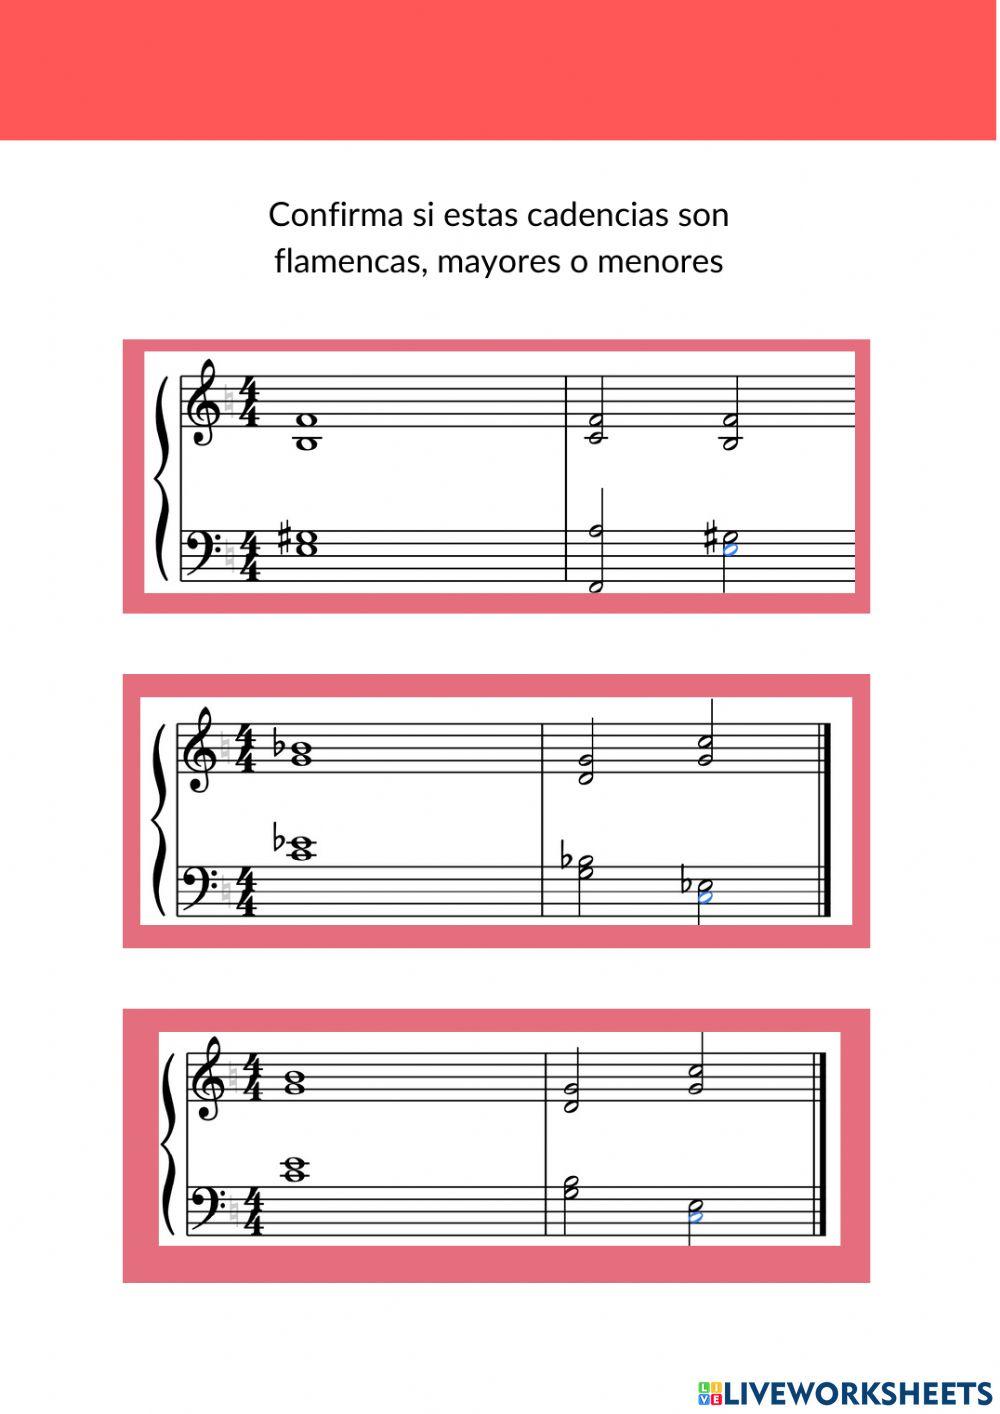 Palos y tonalidades del flamenco